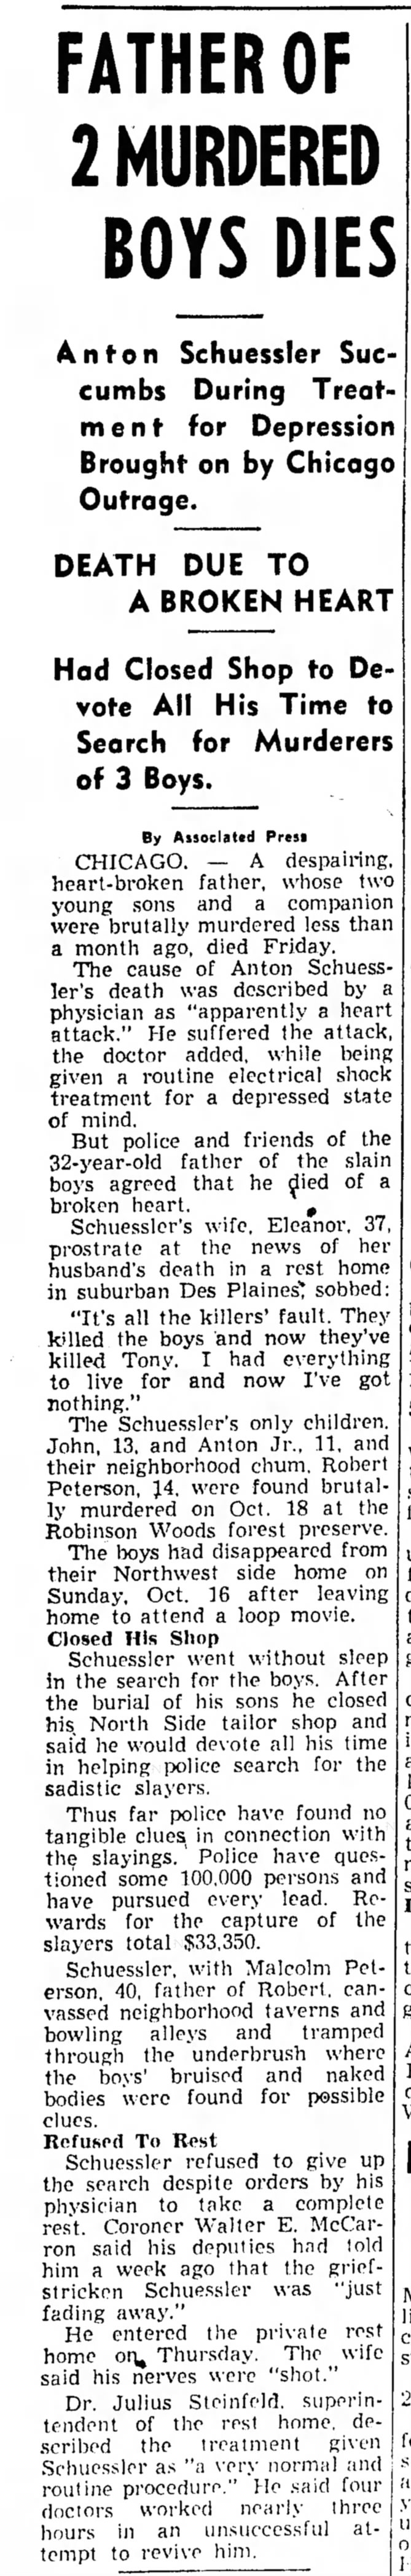 Antone Schuessler death - 12 Nov 1955